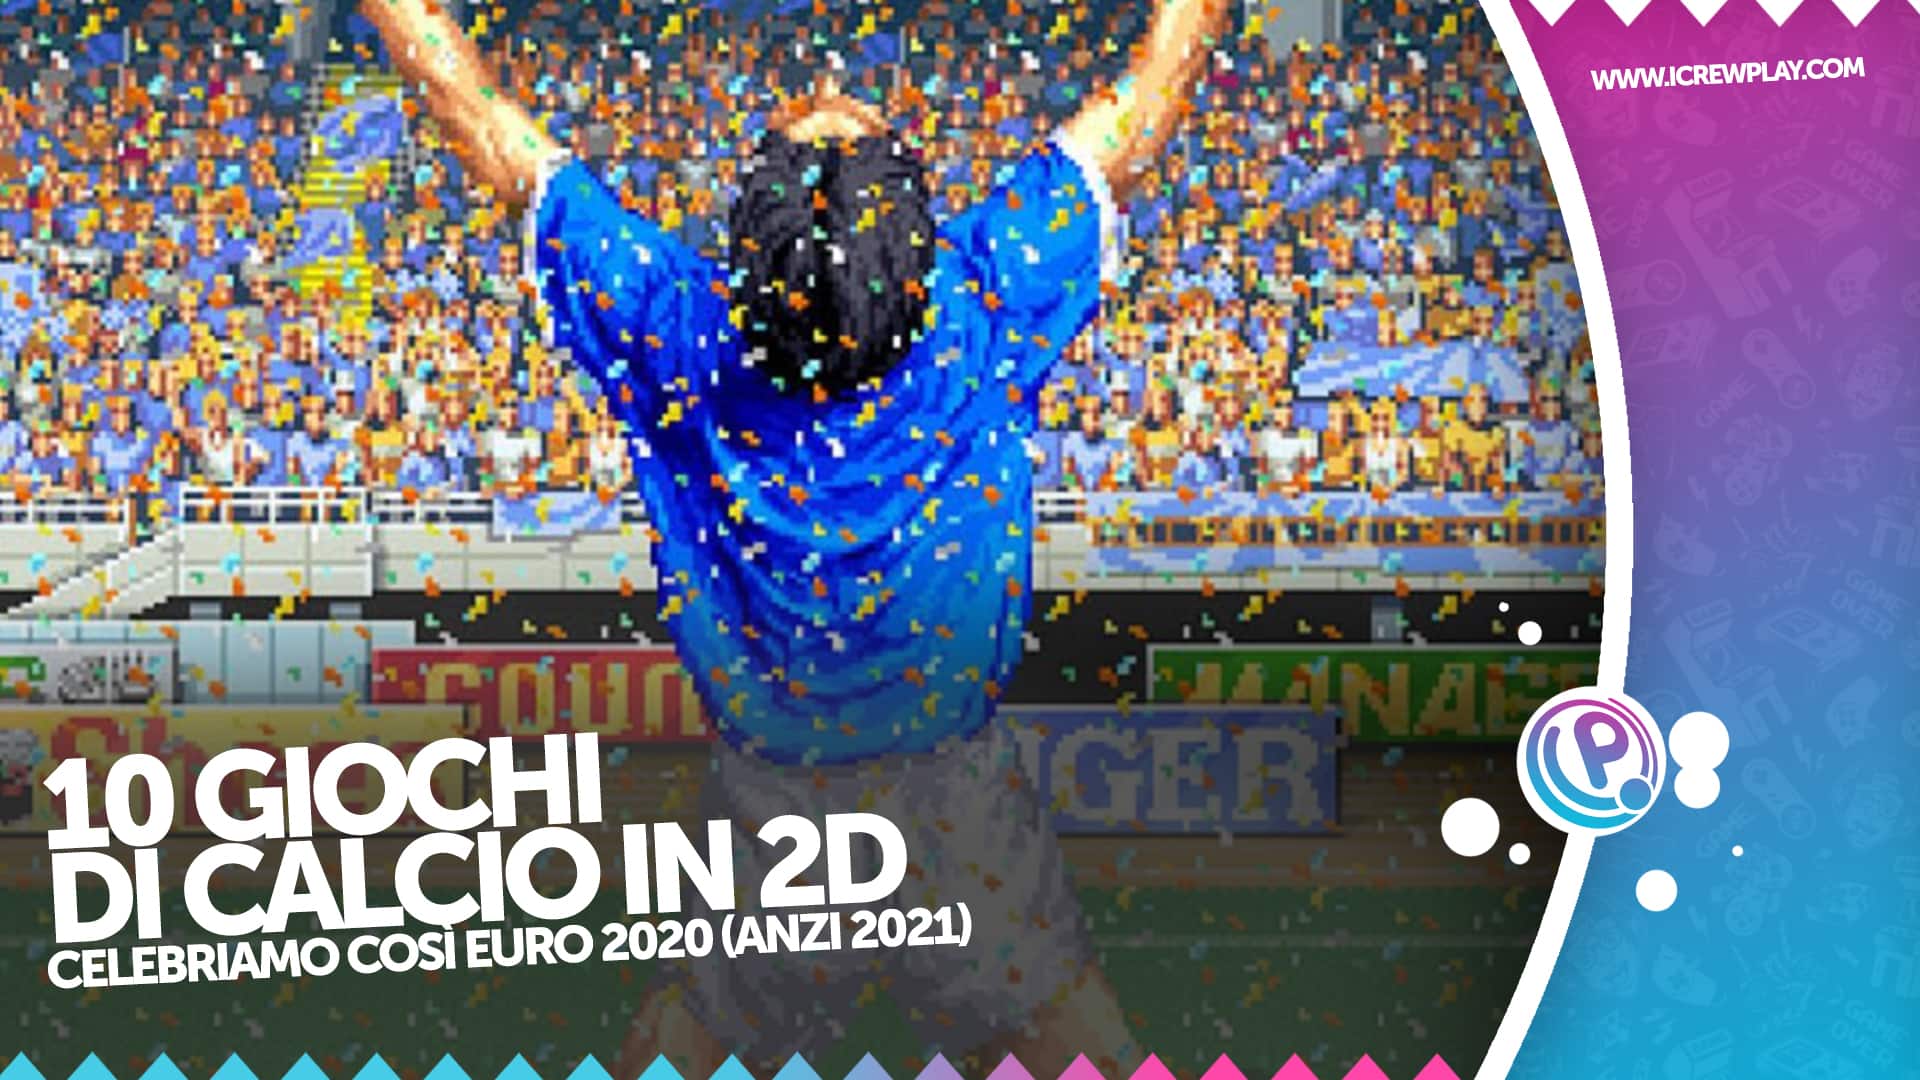 Top 10 giochi di calcio in 2D, per celebrare Euro 2020 22